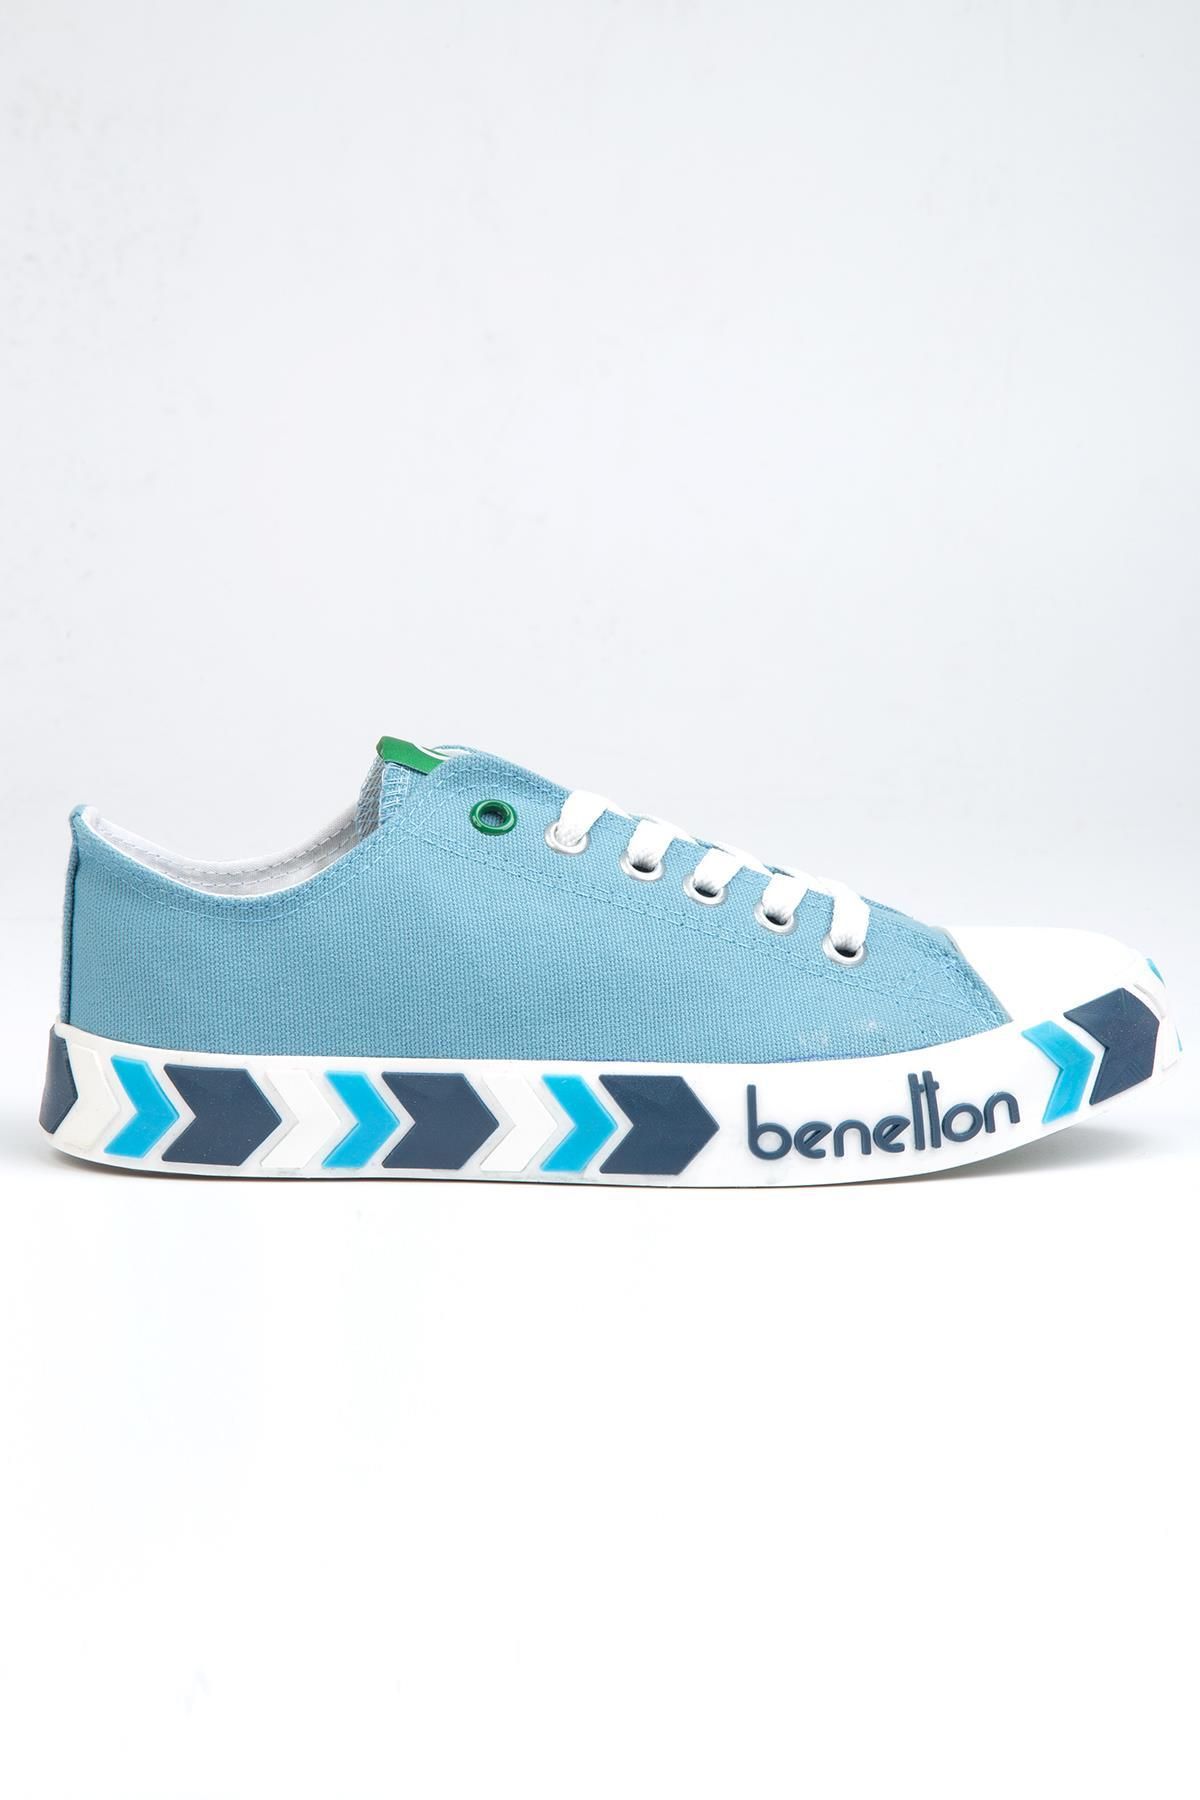 Benetton ® | BN-30622-3374 Mavi - Erkek Spor Ayakkabı